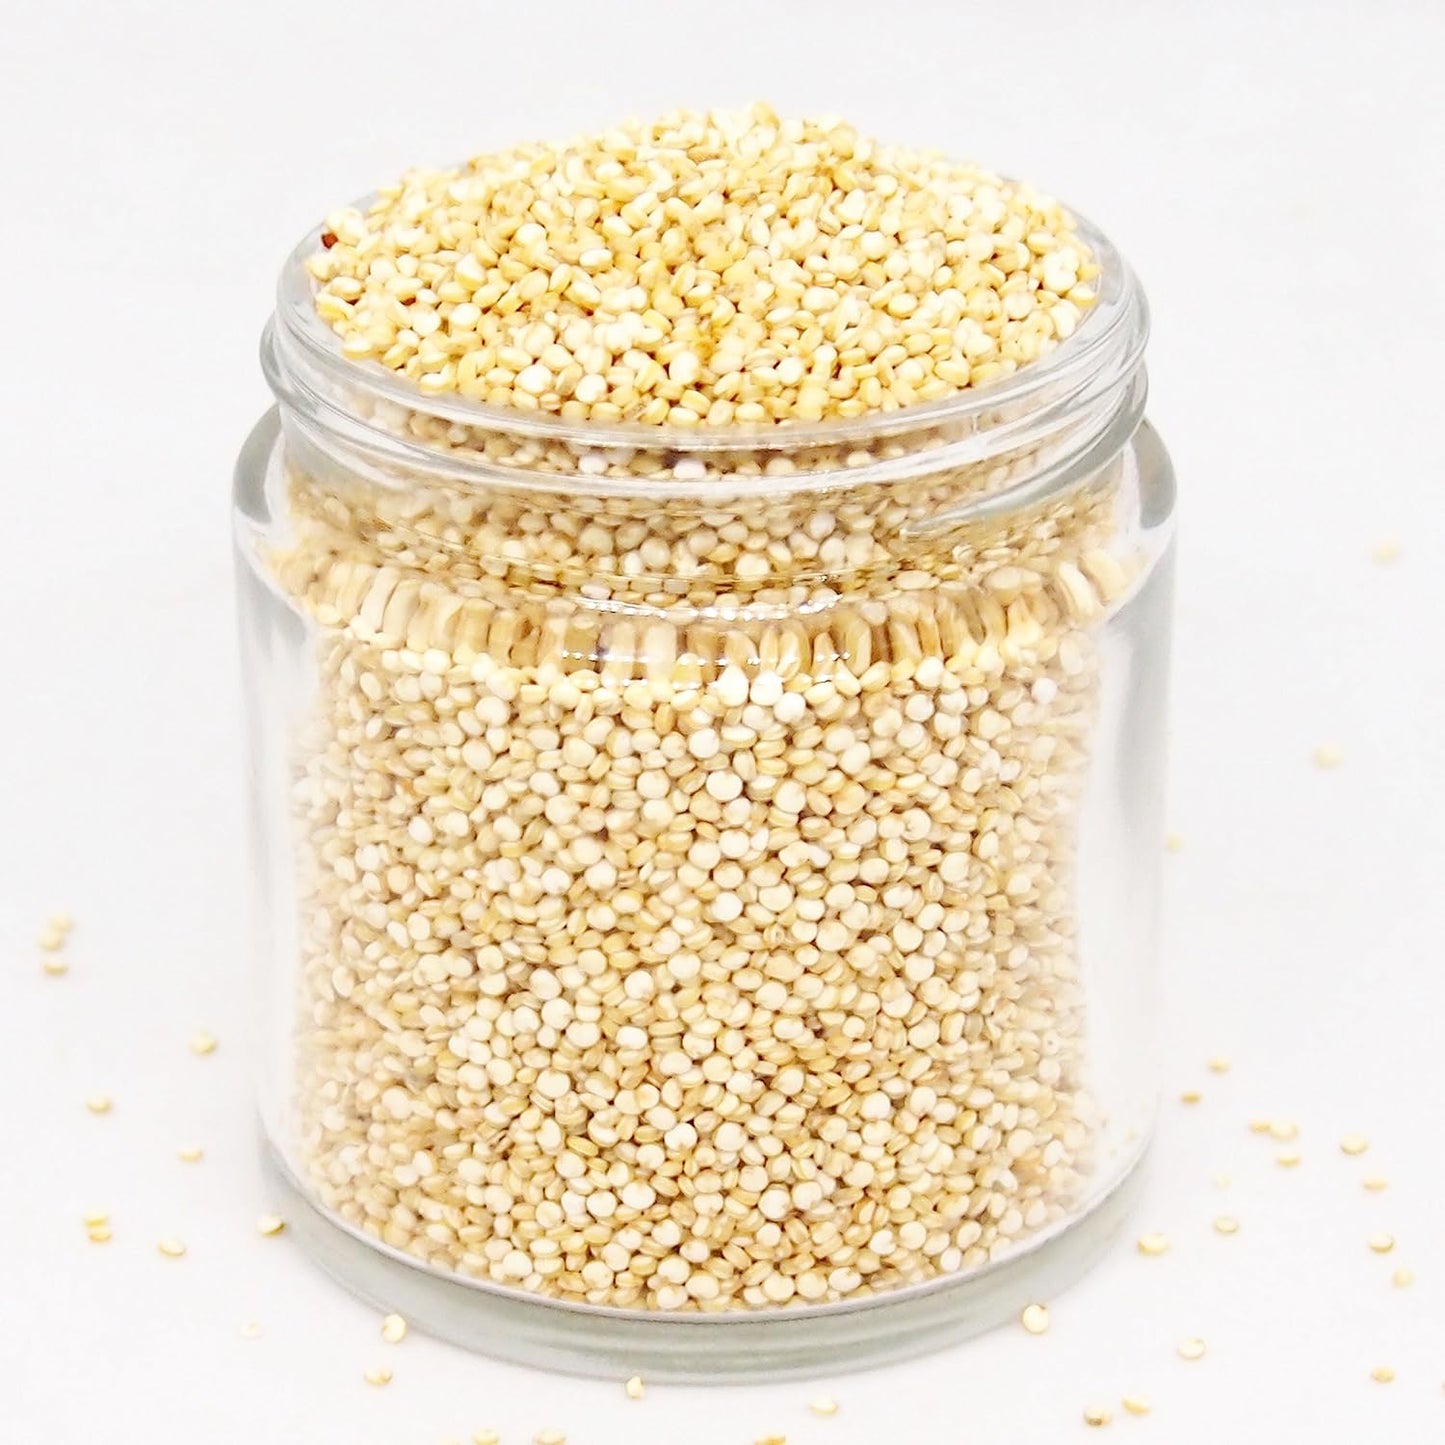 Peruvian White Quinoa Grain, 750g Pouch - Tassyam Organics